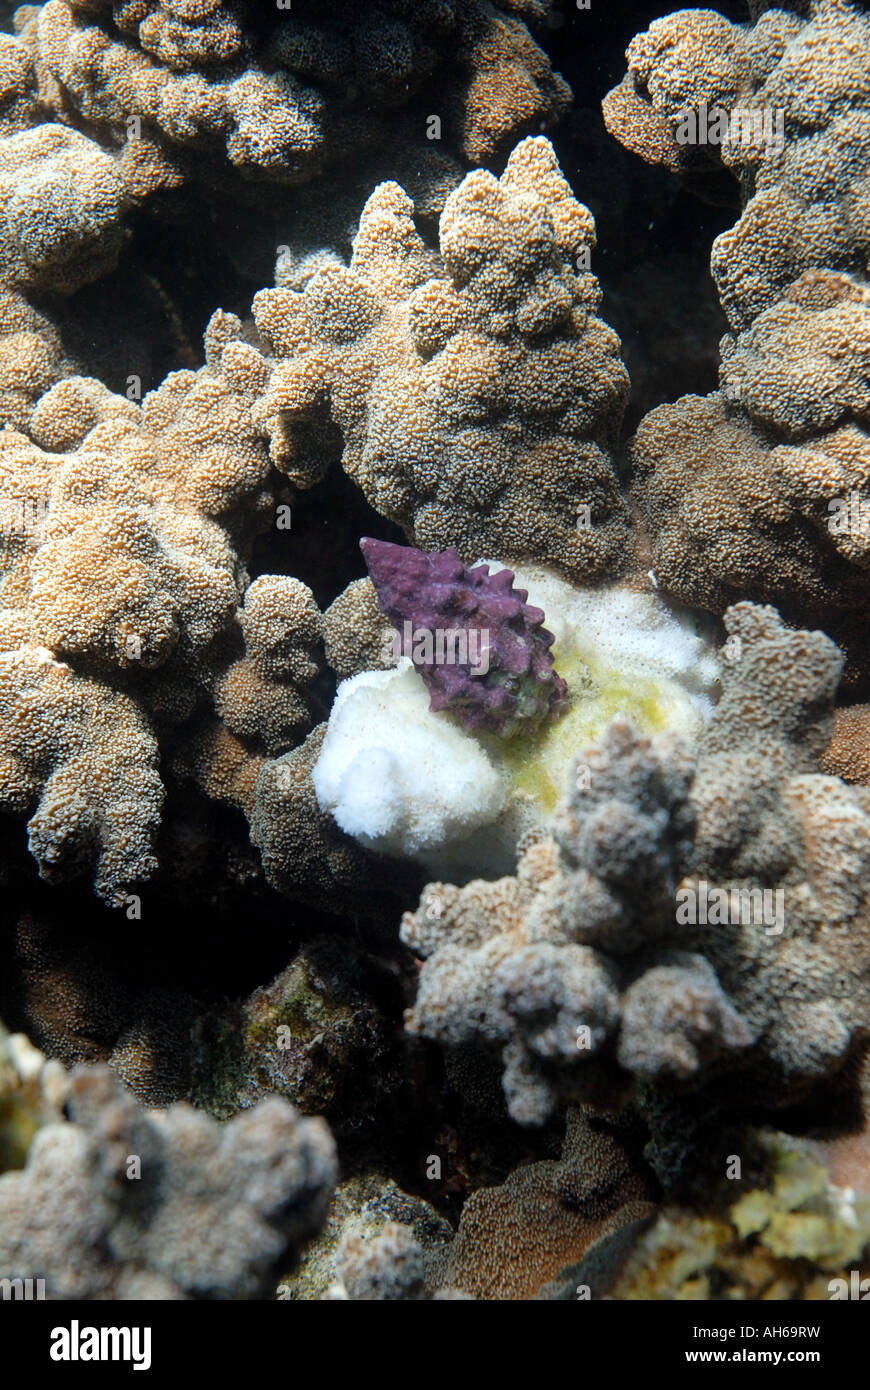 Purple coral eating snail Drupella cornus on coral Montipora sp with white feeding scar Stock Photo